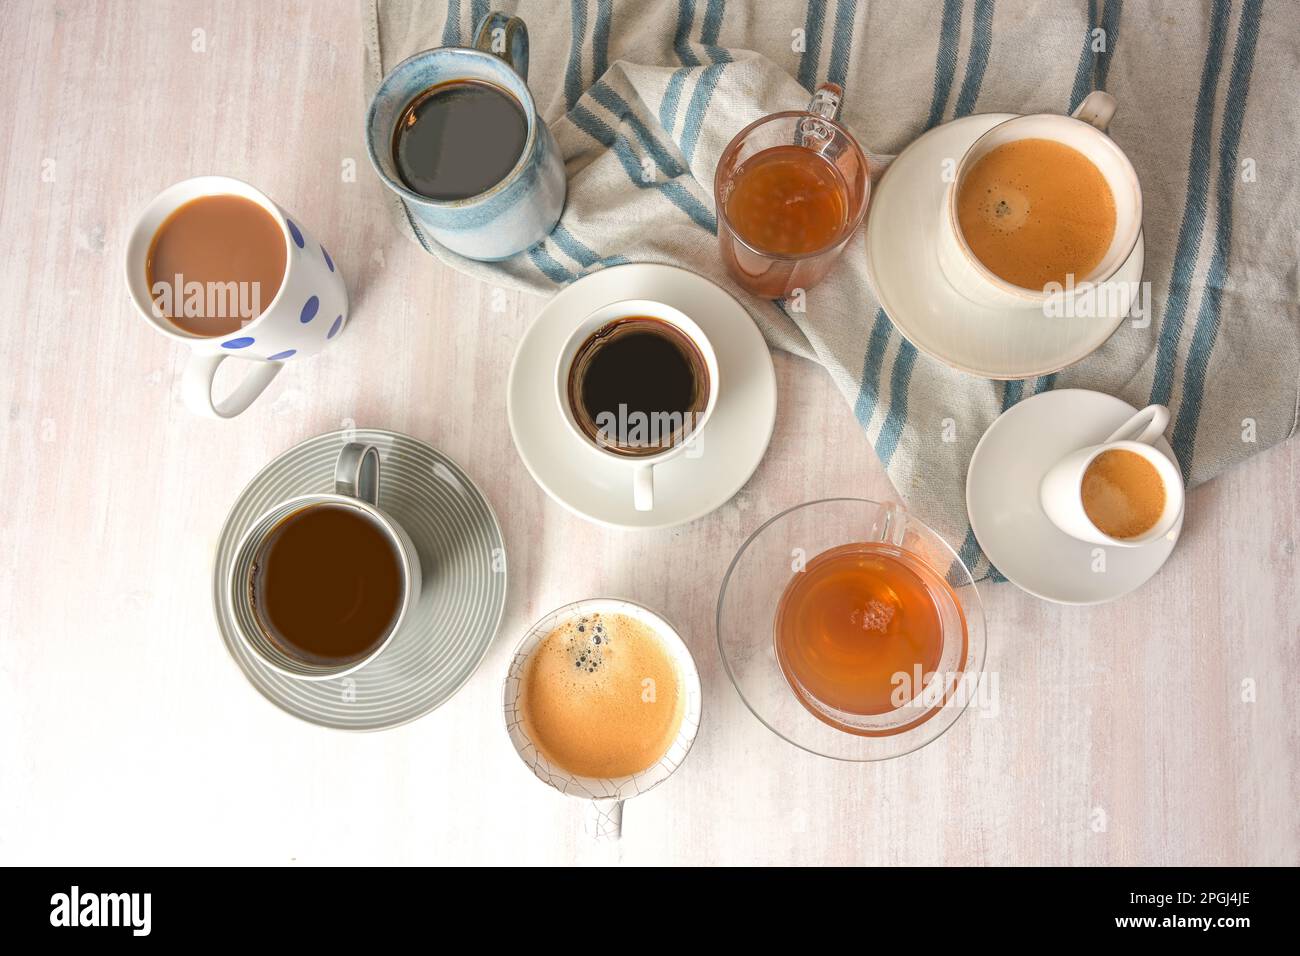 Plusieurs tasses et tasses différentes avec café et thé boissons sur une table lumineuse avec une serviette gris bleu, vue en grand angle de dessus, sélection de foyer, étroit Banque D'Images